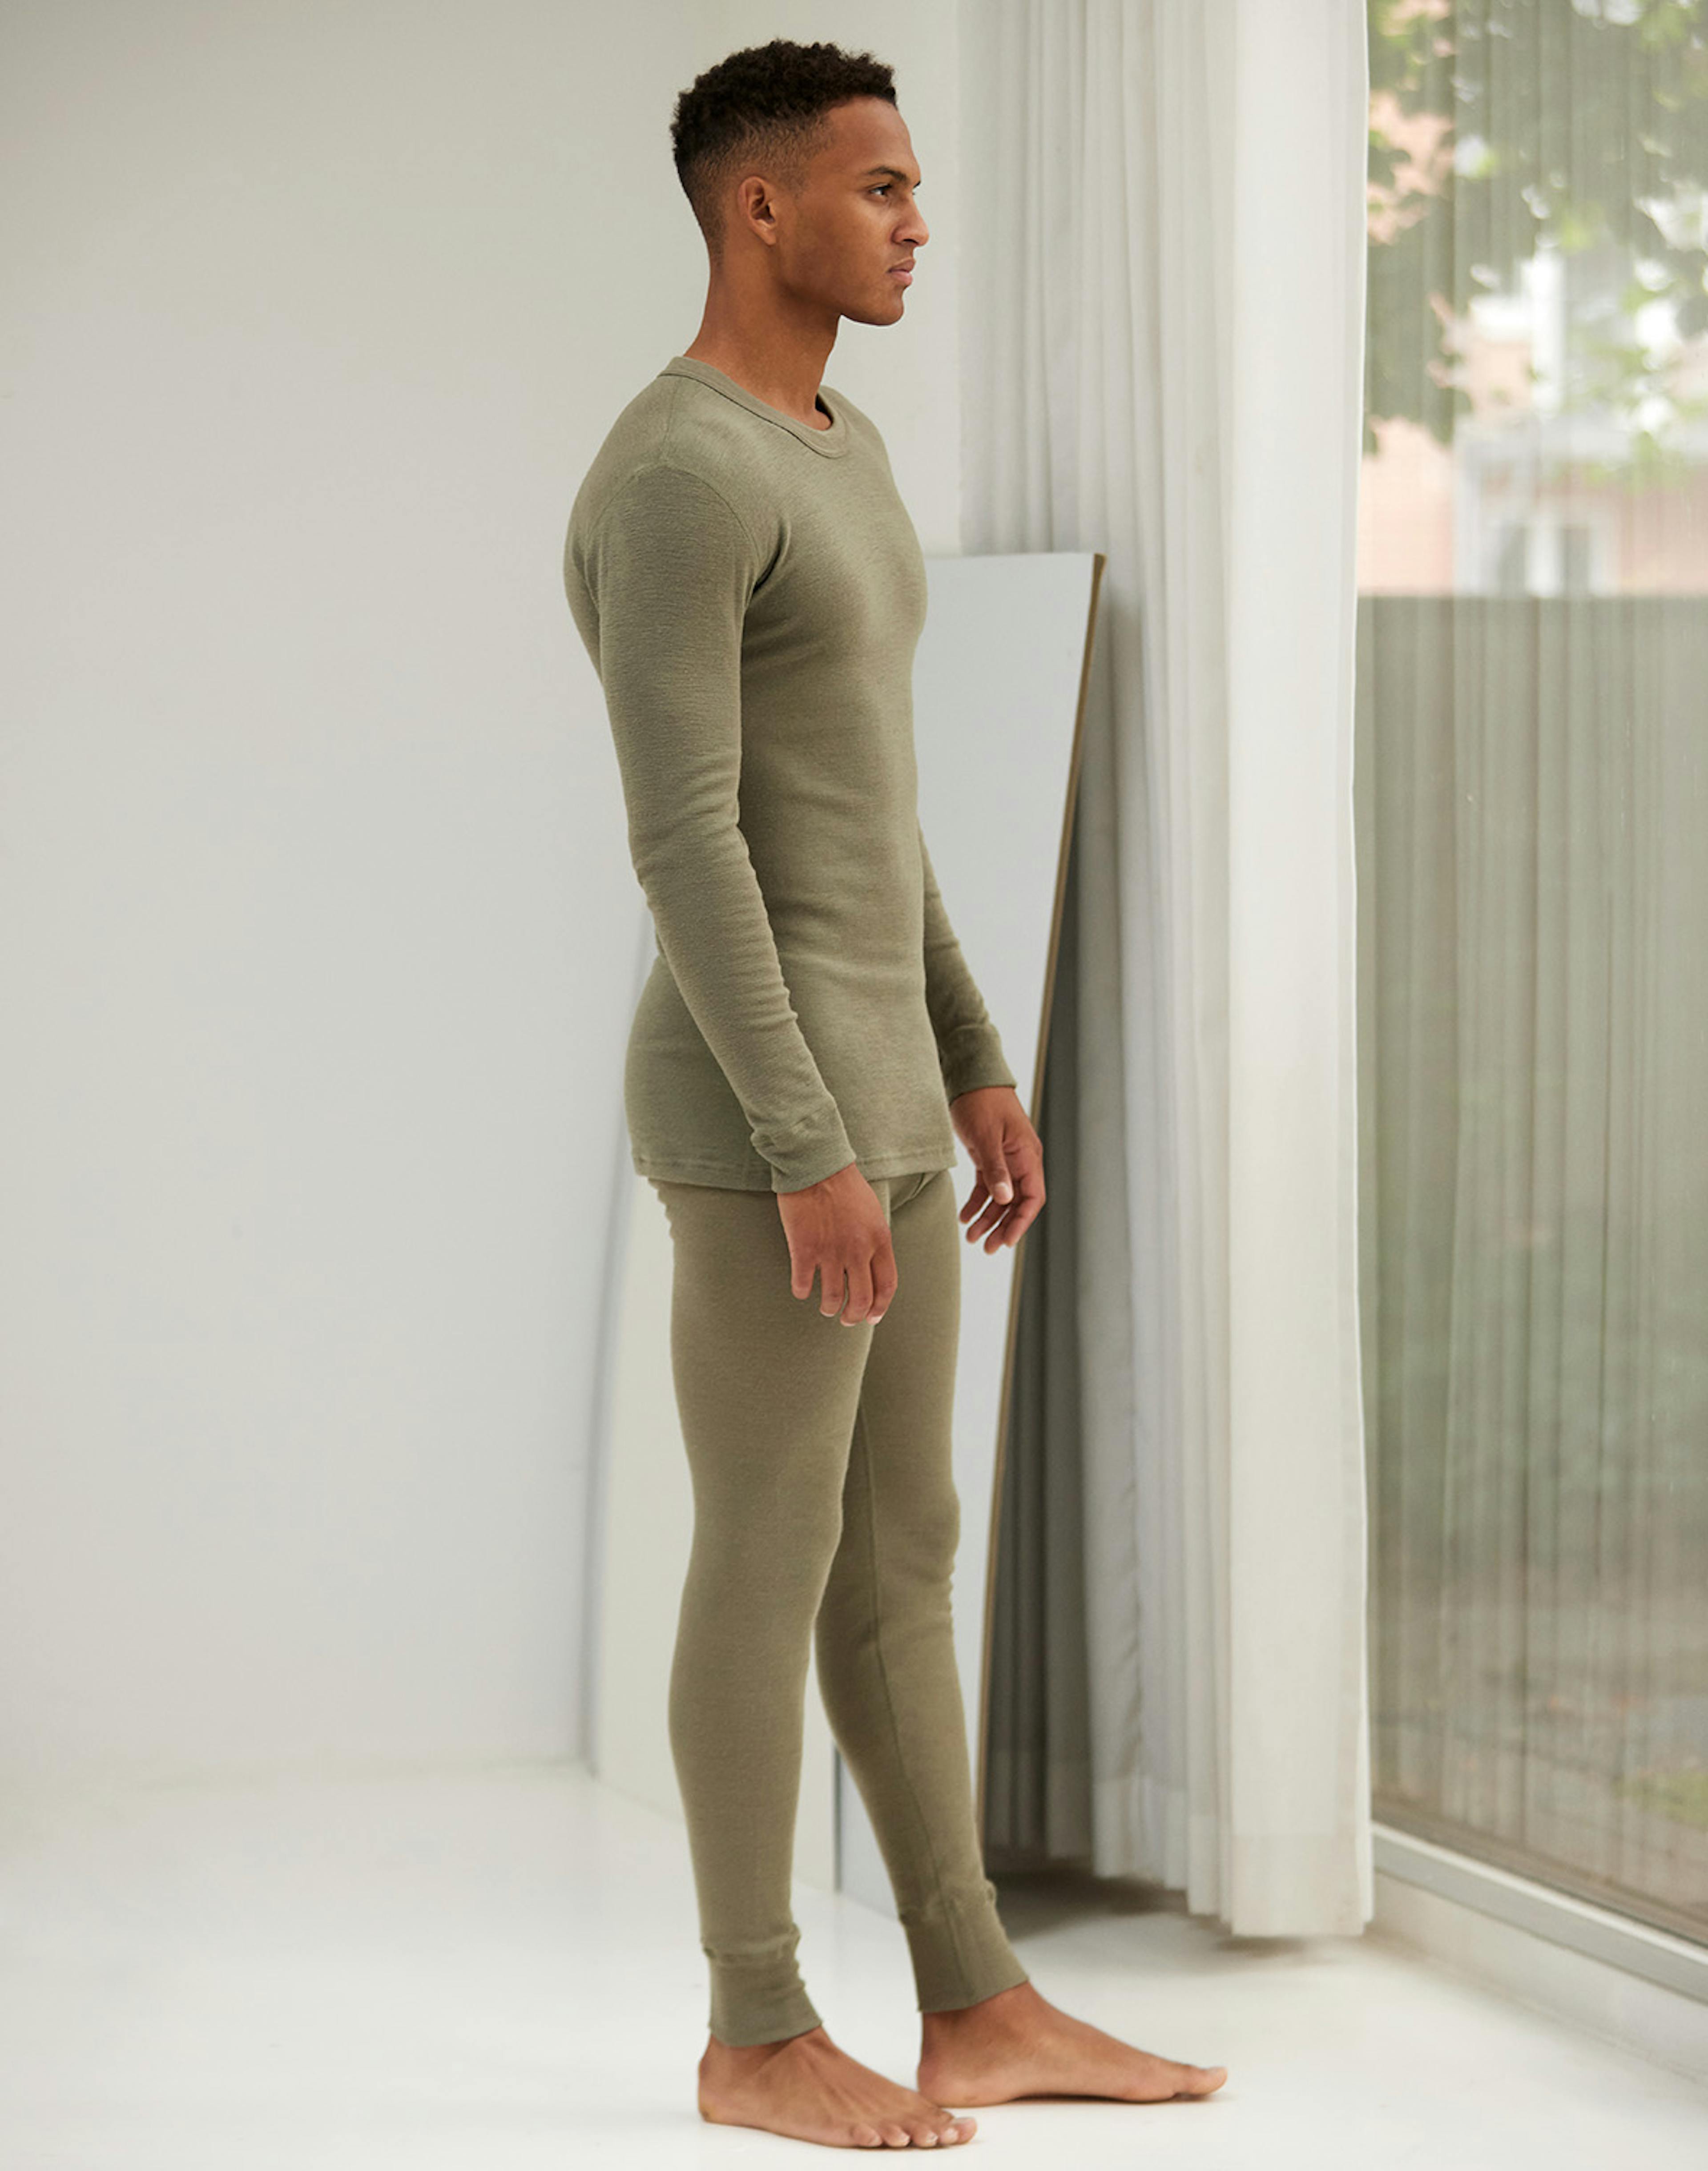 Merino wool leggings for men - Dilling